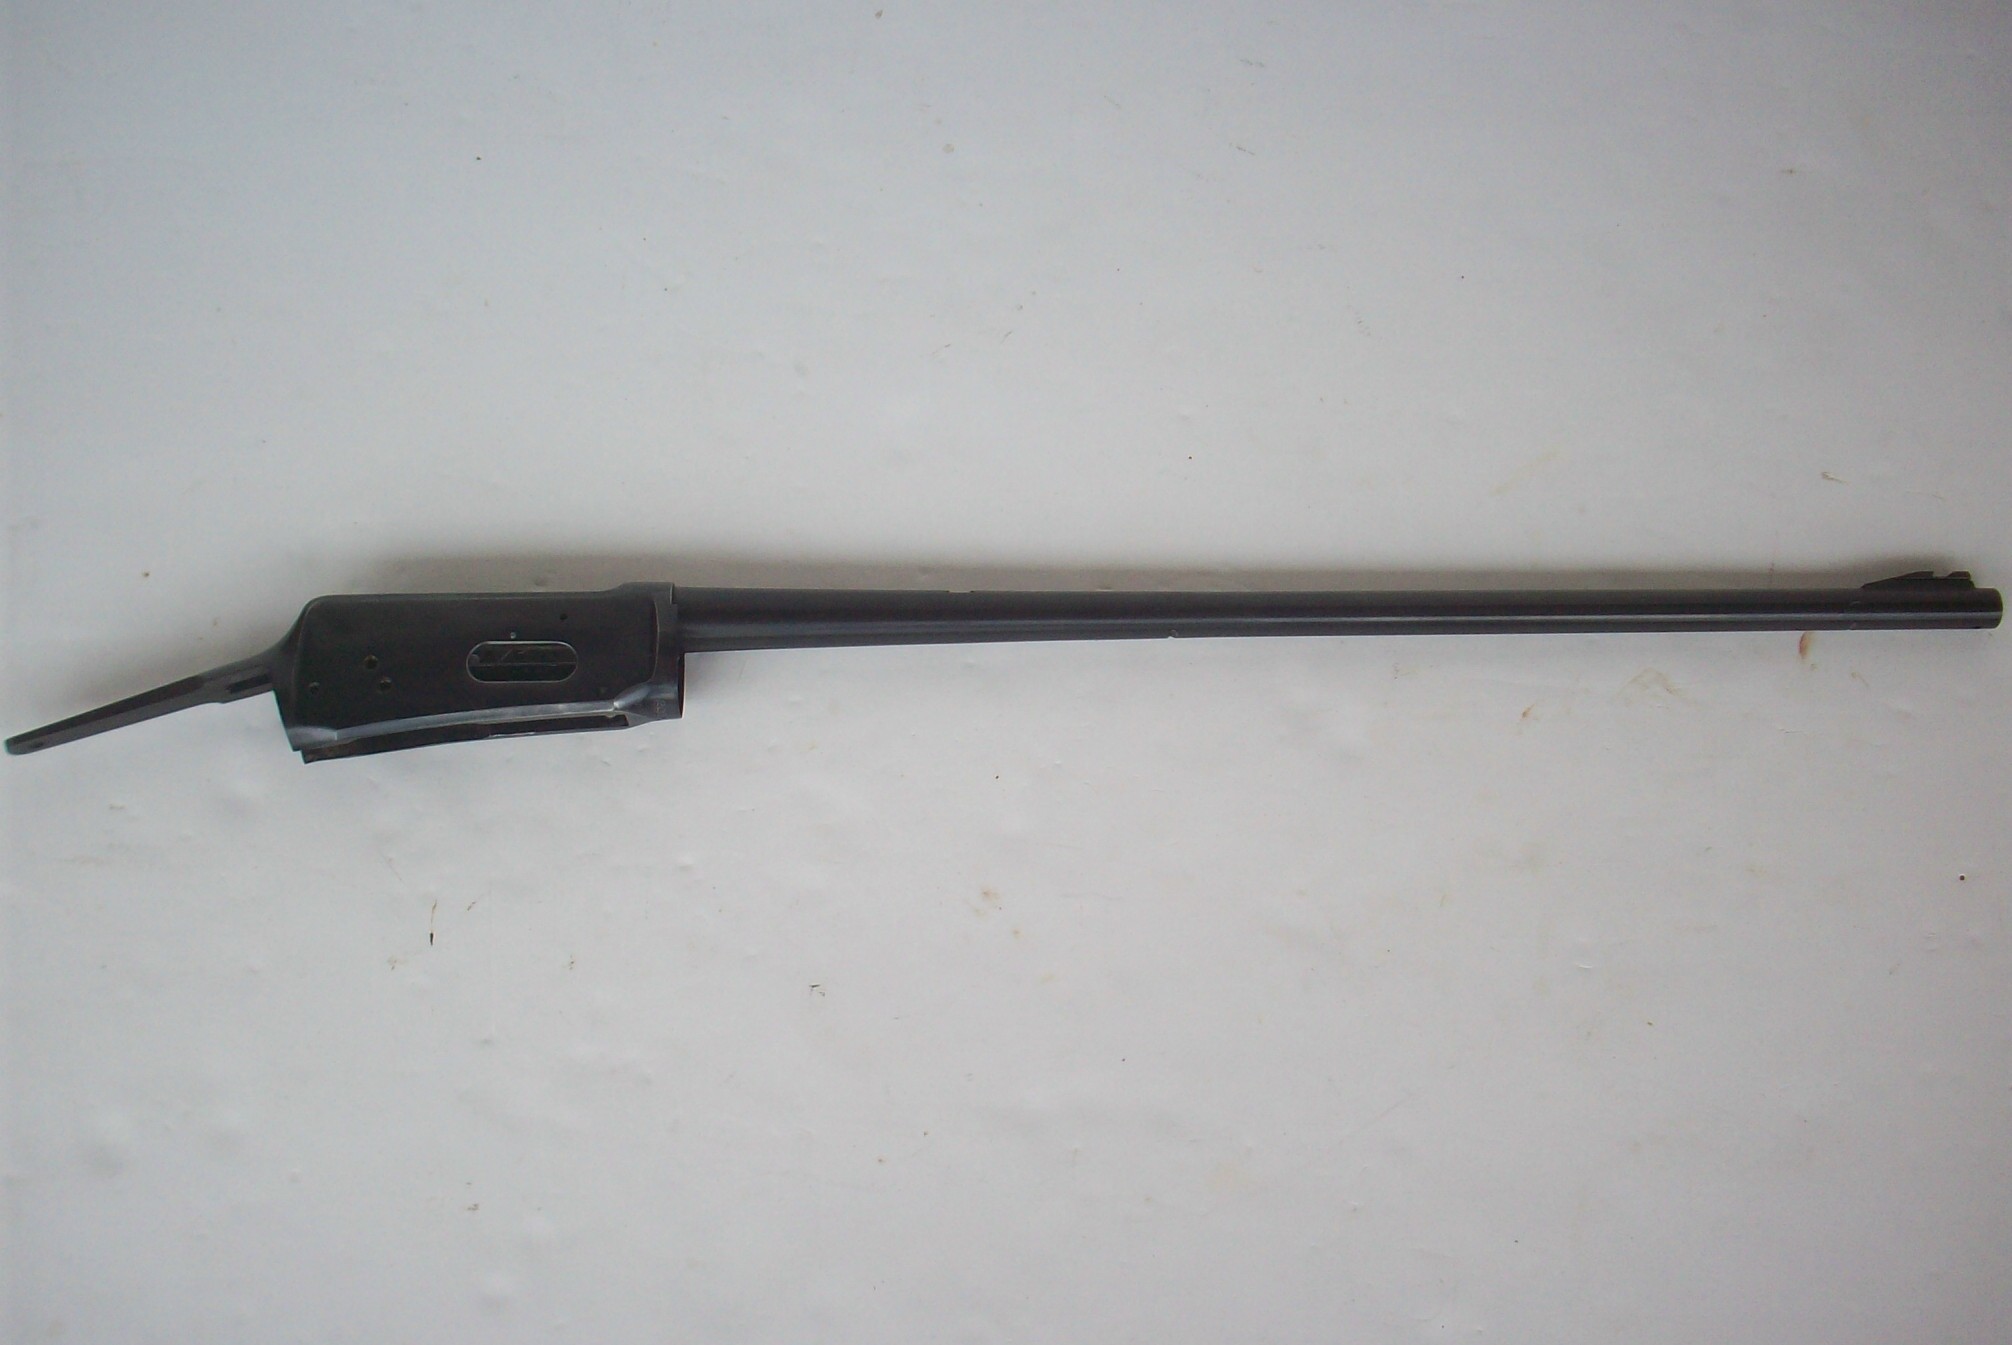 Winchester 94 Pre 64 Breech Bolt        WIN-0010-001-001R 